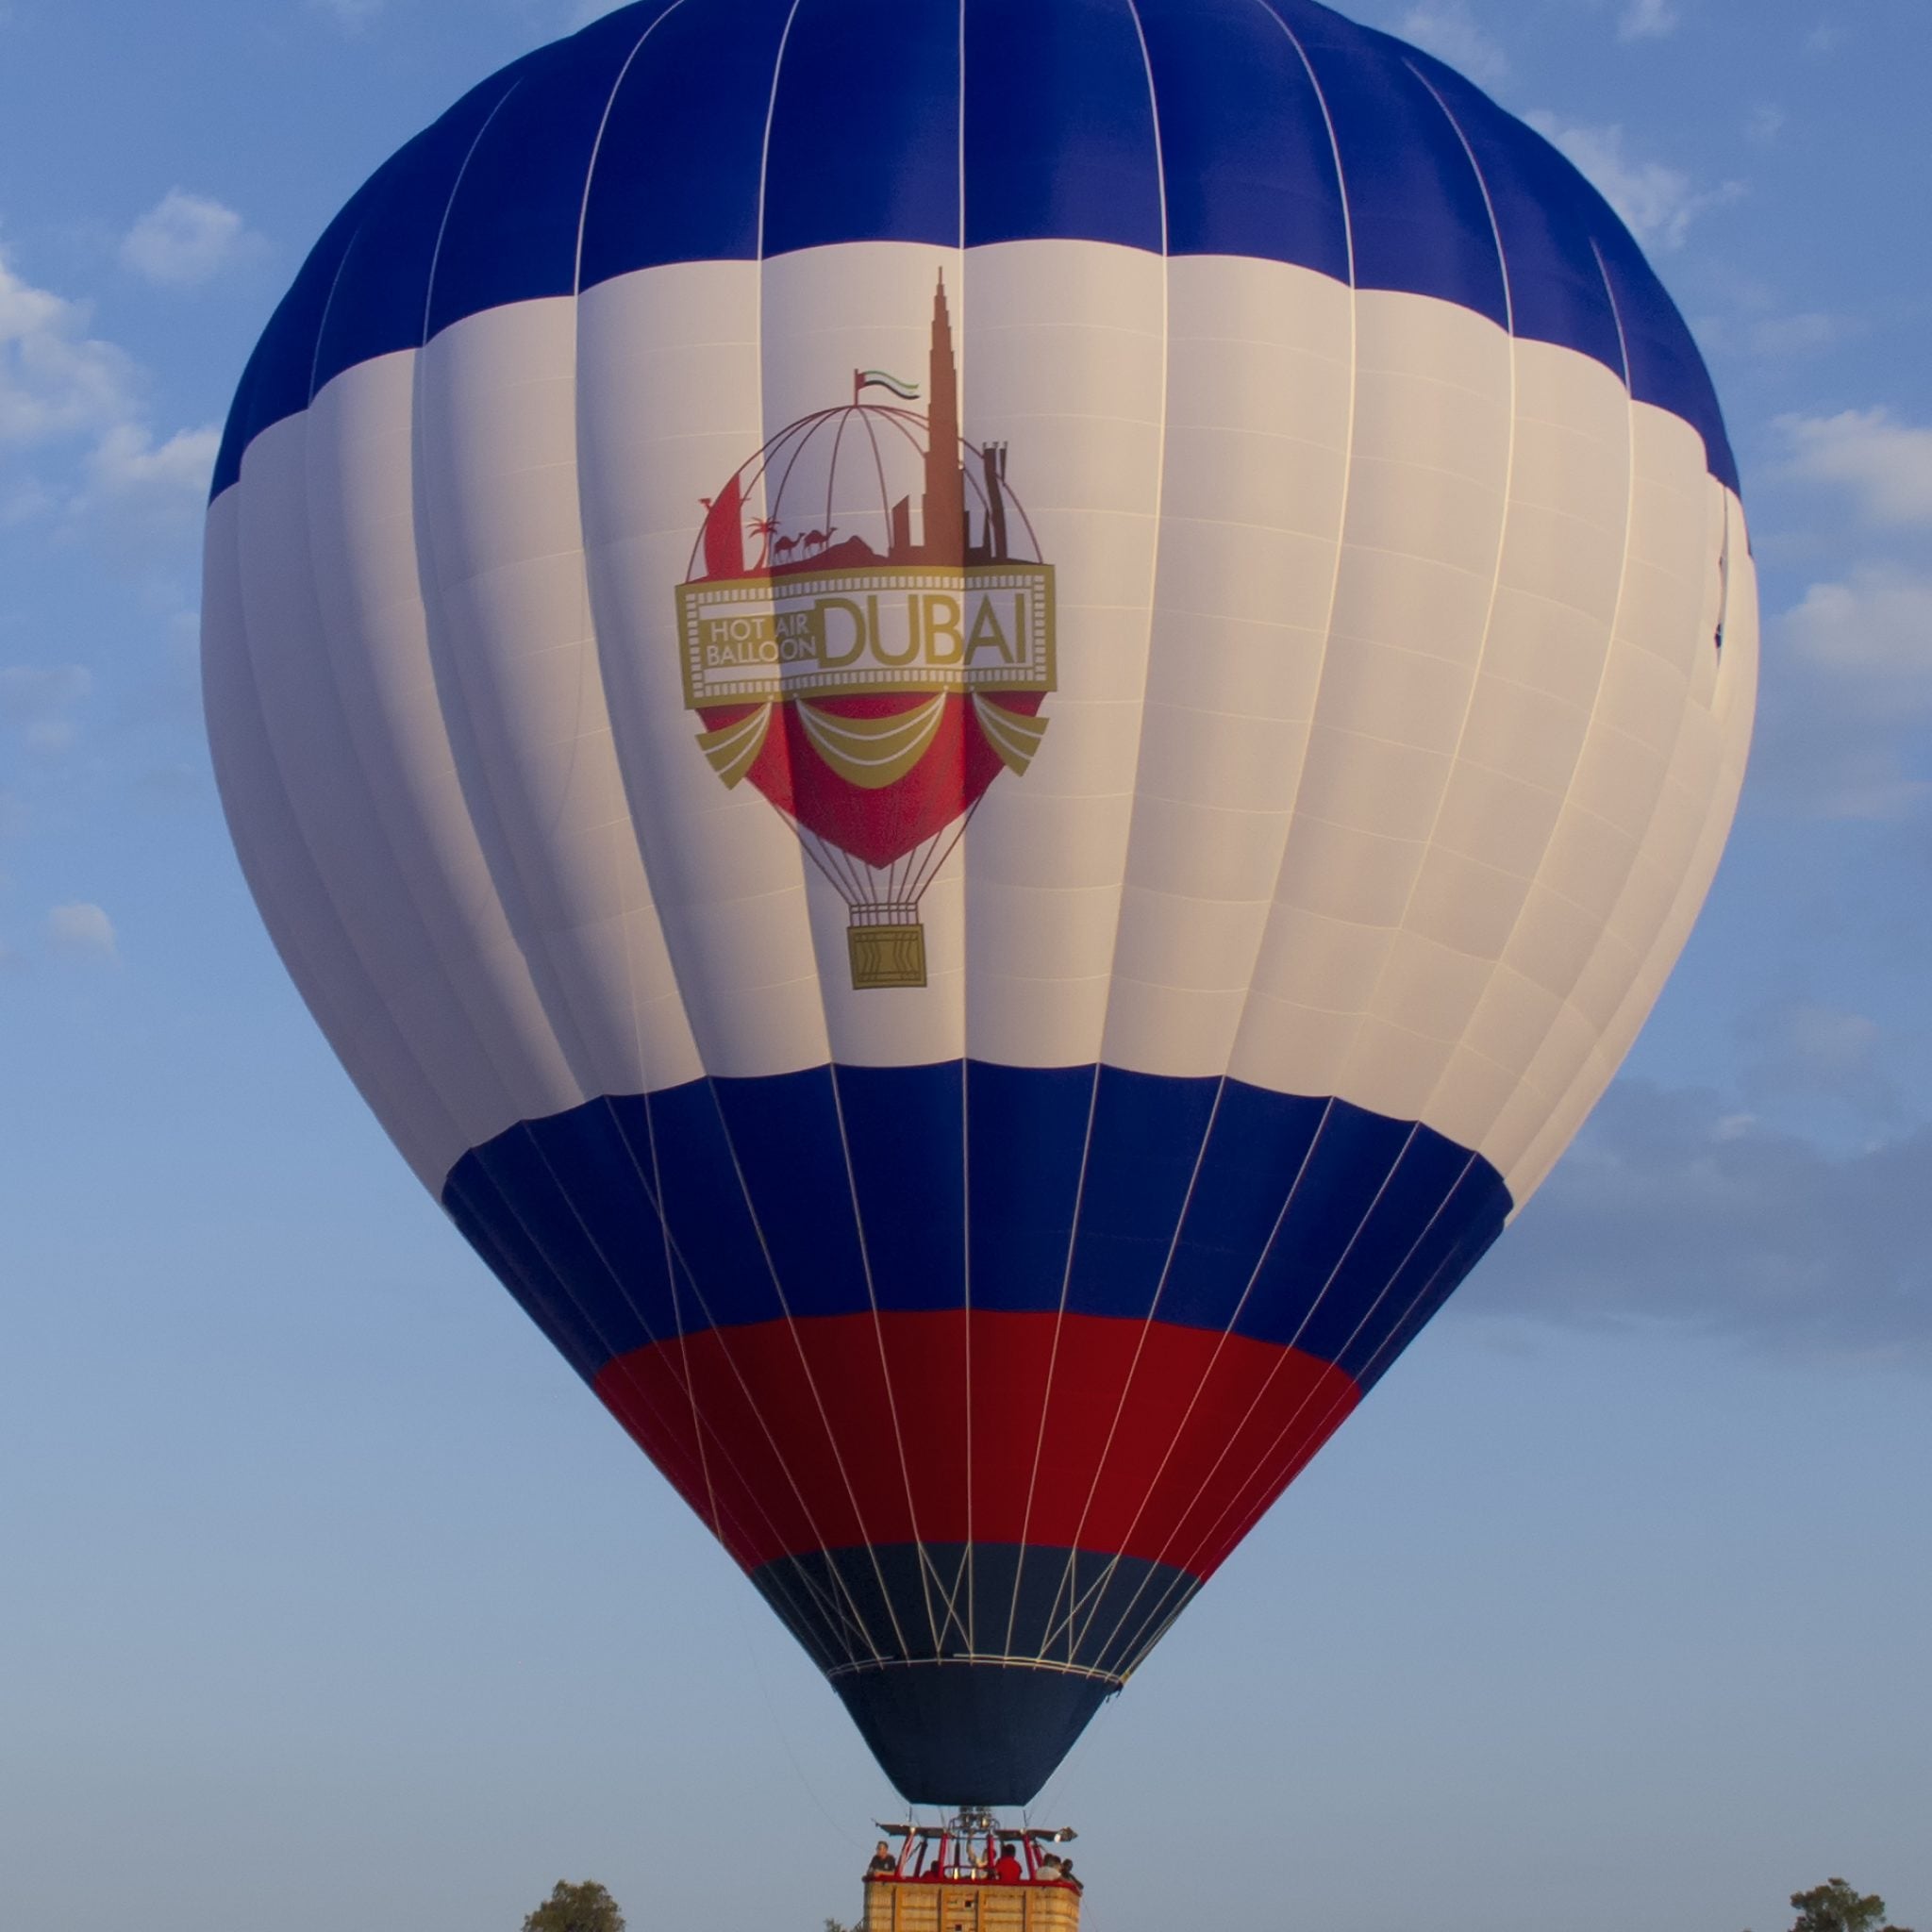 Vista incrível do balão de ar quente Dubai